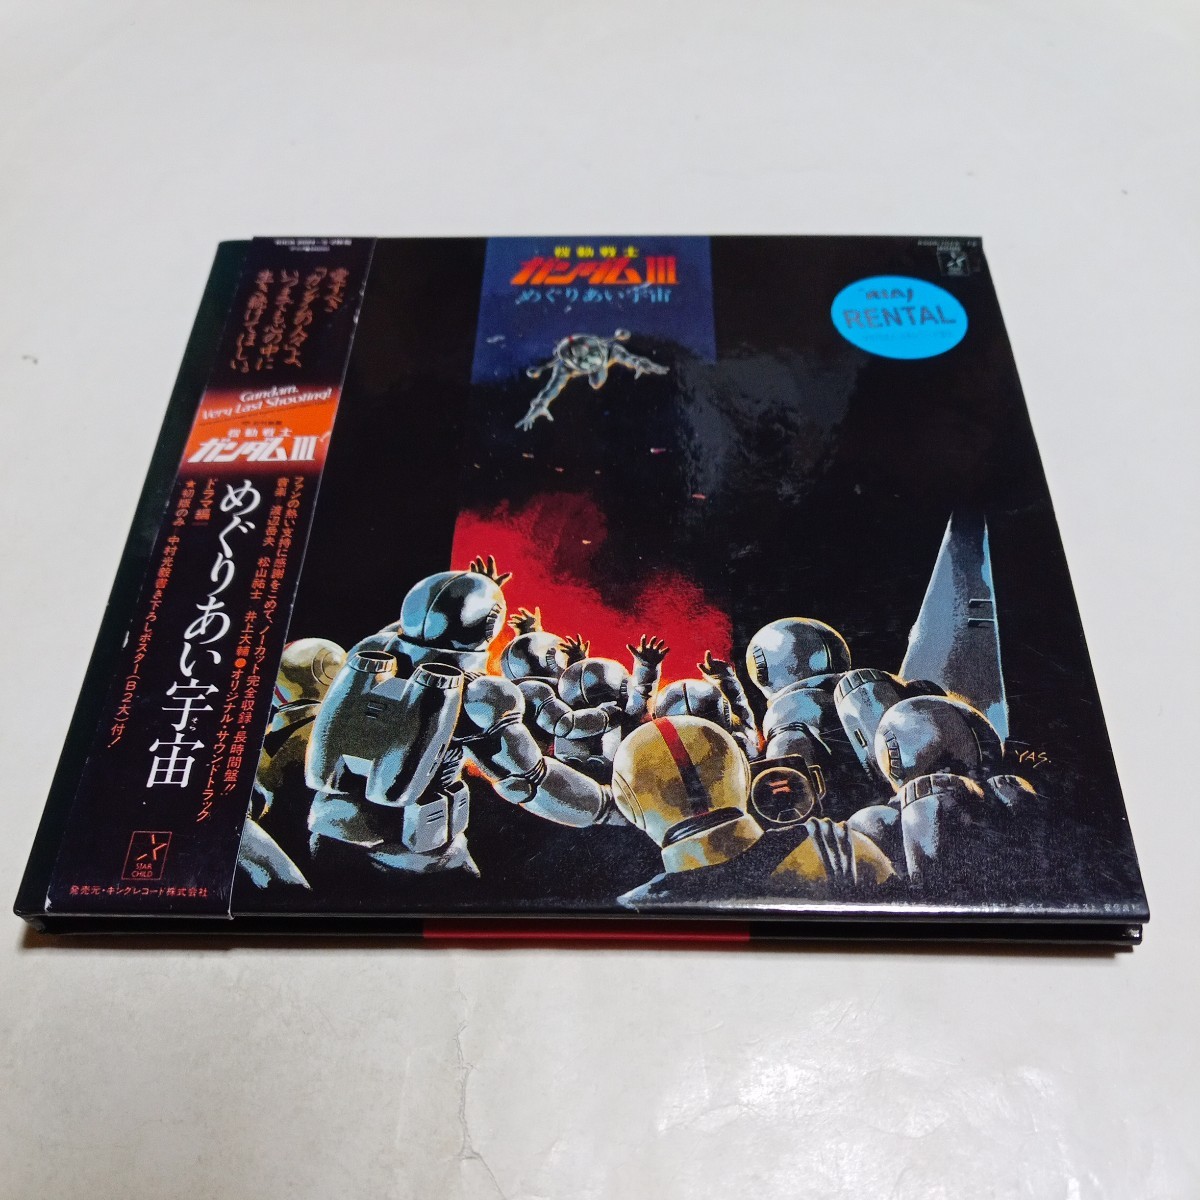 CD 劇場版 機動戦士ガンダムⅢ めぐりあい宇宙 ドラマ編 ファーストガンダムの画像1